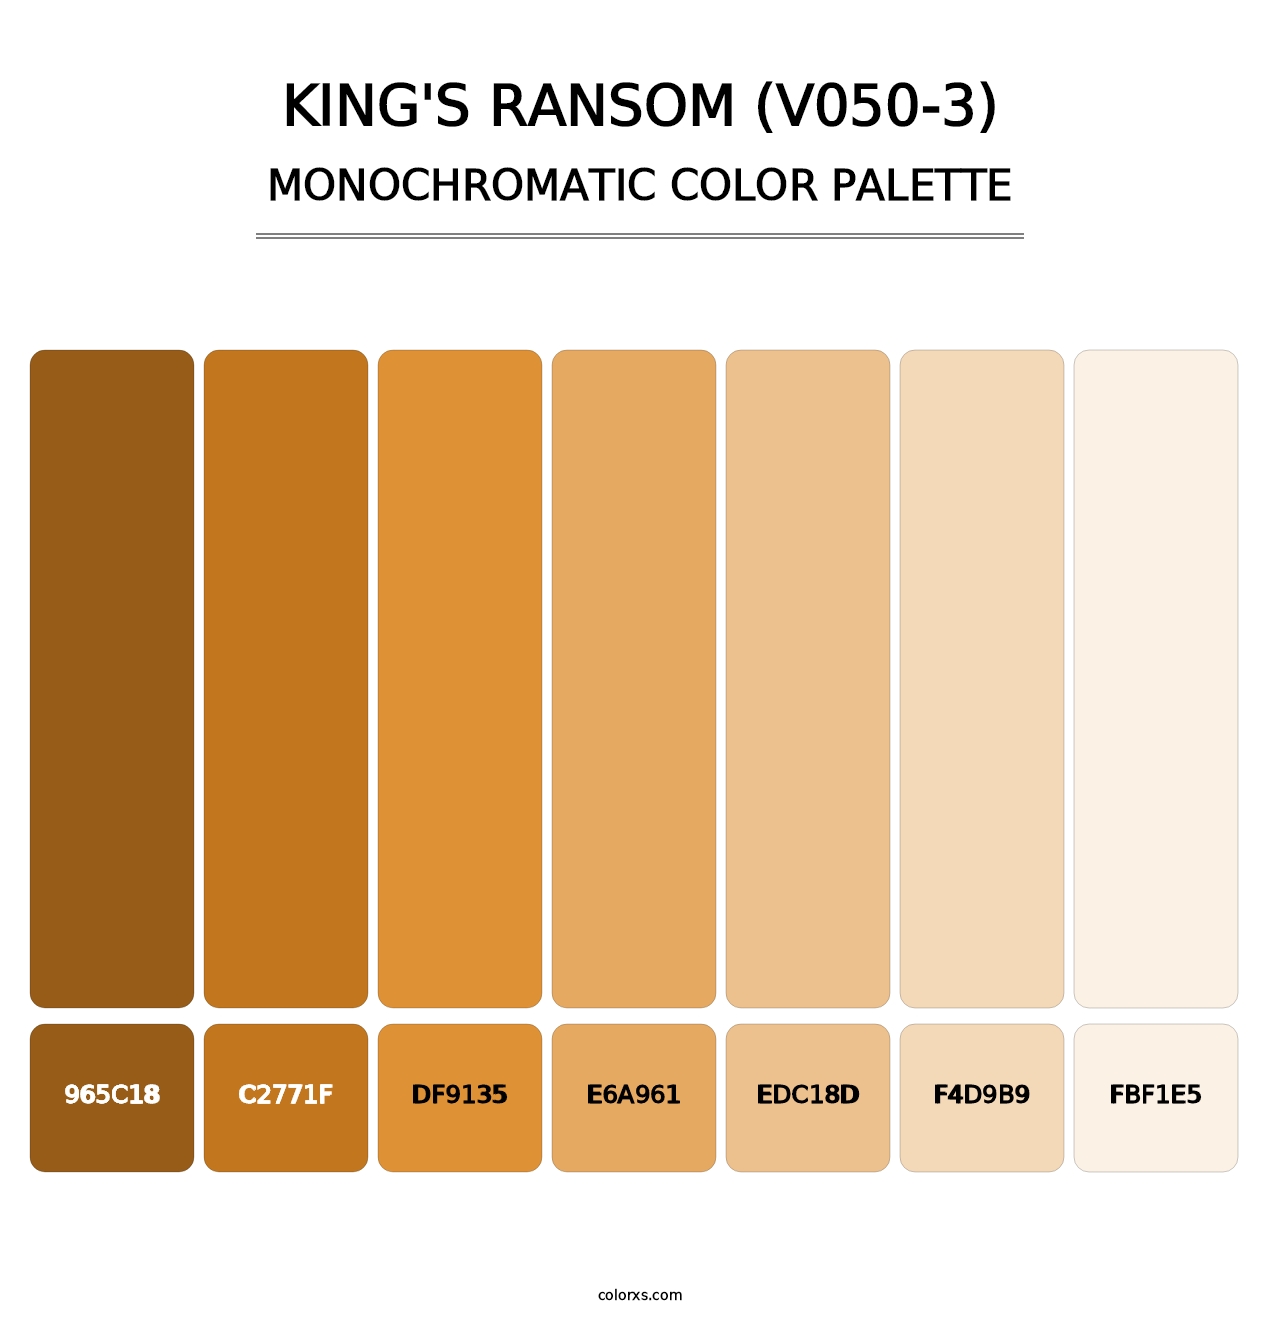 King's Ransom (V050-3) - Monochromatic Color Palette